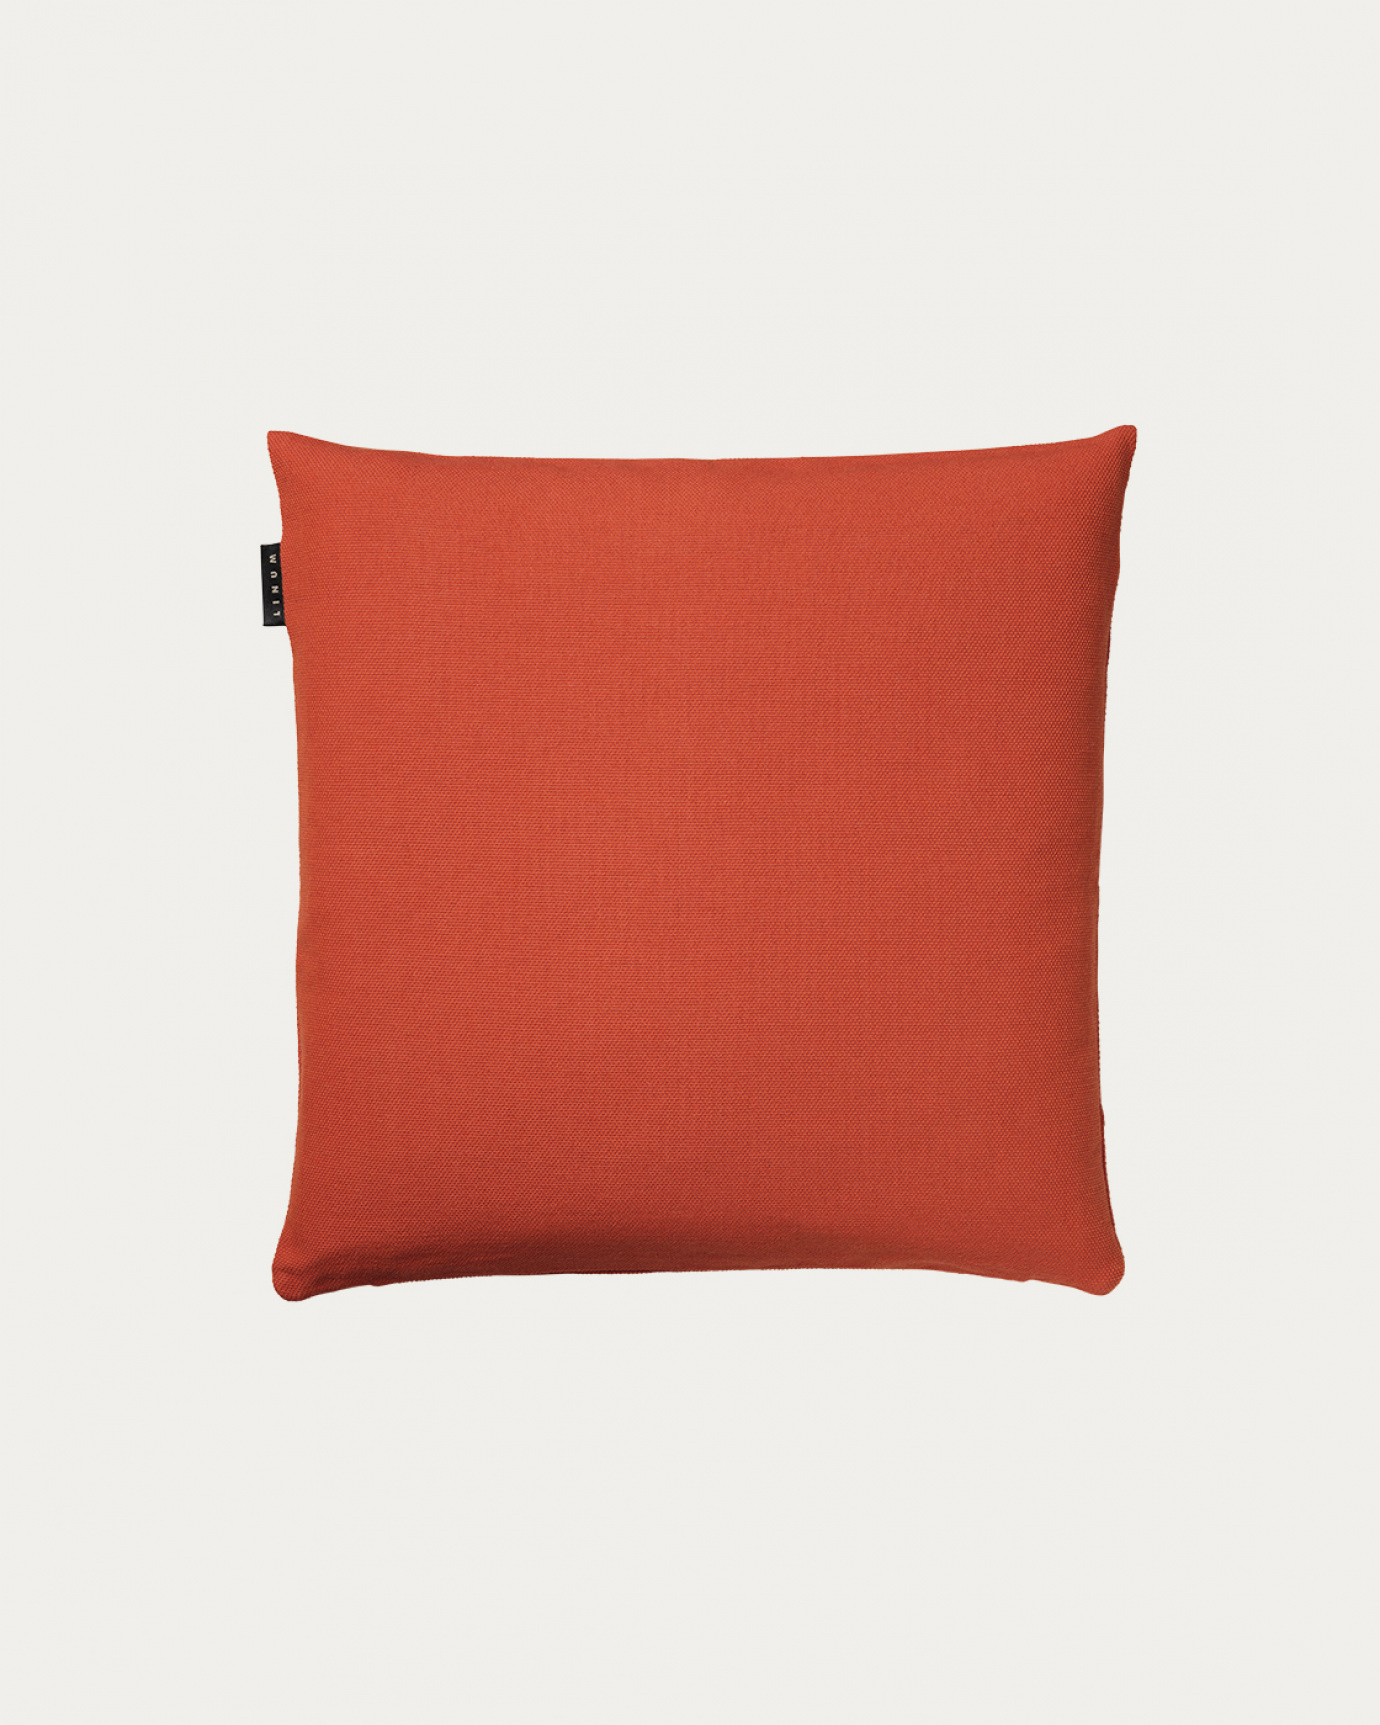 Image du produit housse de coussin PEPPER orange rouillé en coton doux de LINUM DESIGN. Facile à laver et durable pendant des générations. Taille 40 x 40 cm.